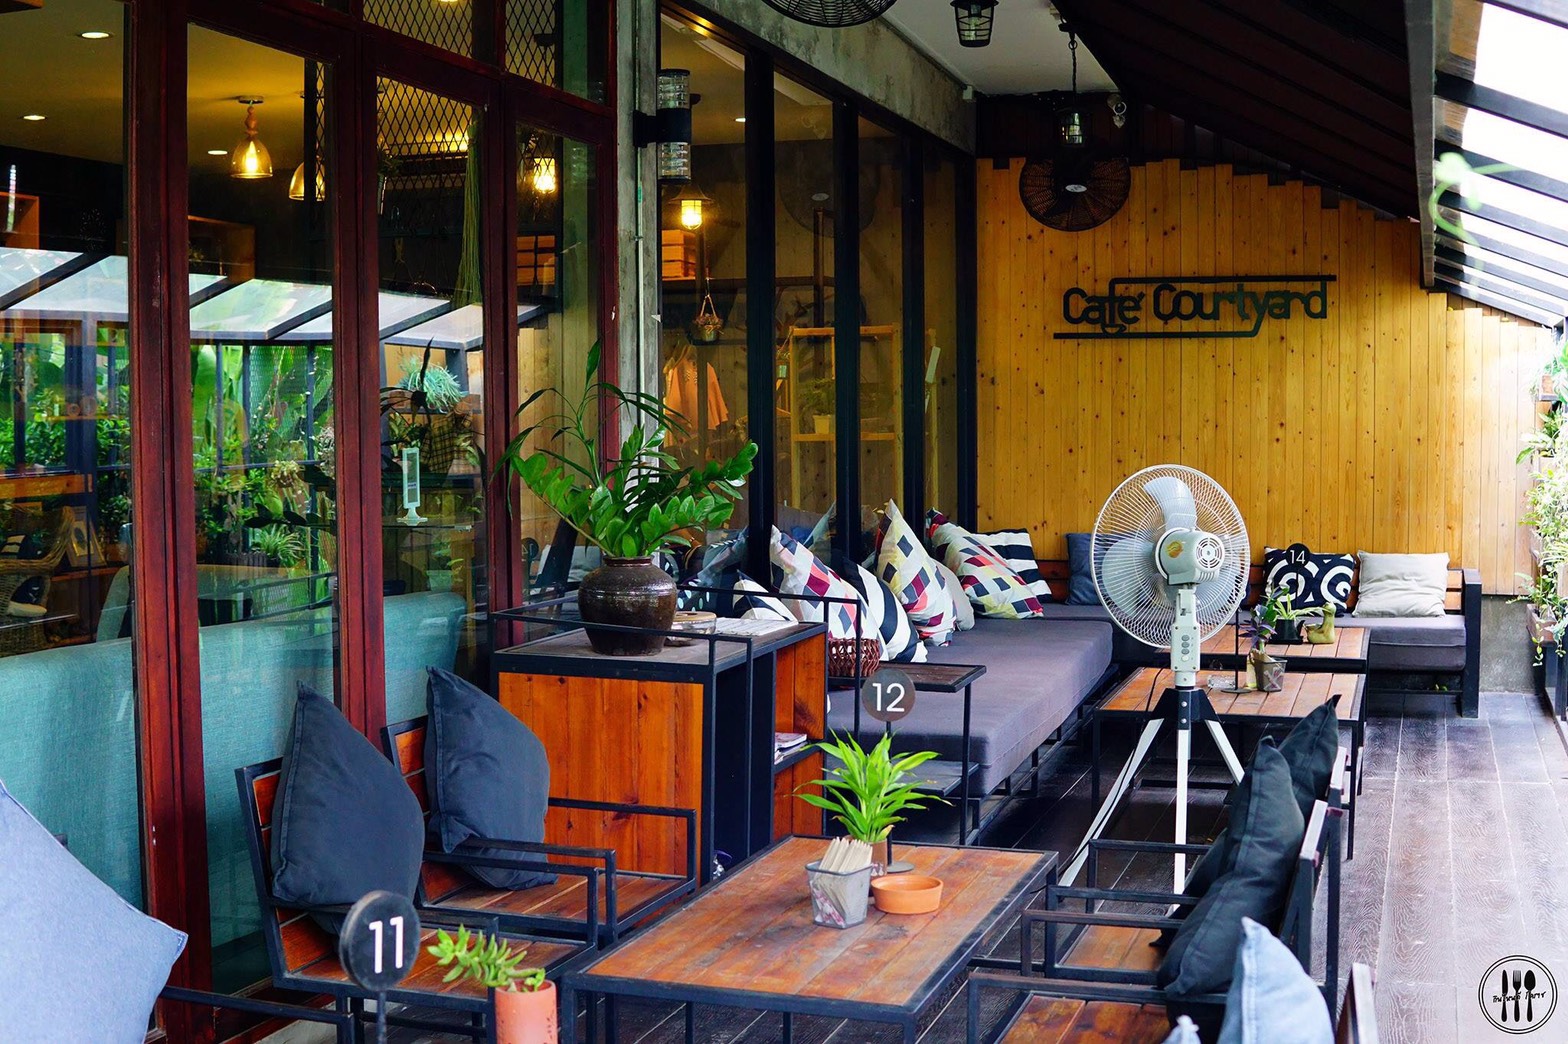 ร้านกาแฟในเมืองโคราช ร้าน Cafe Courtyard